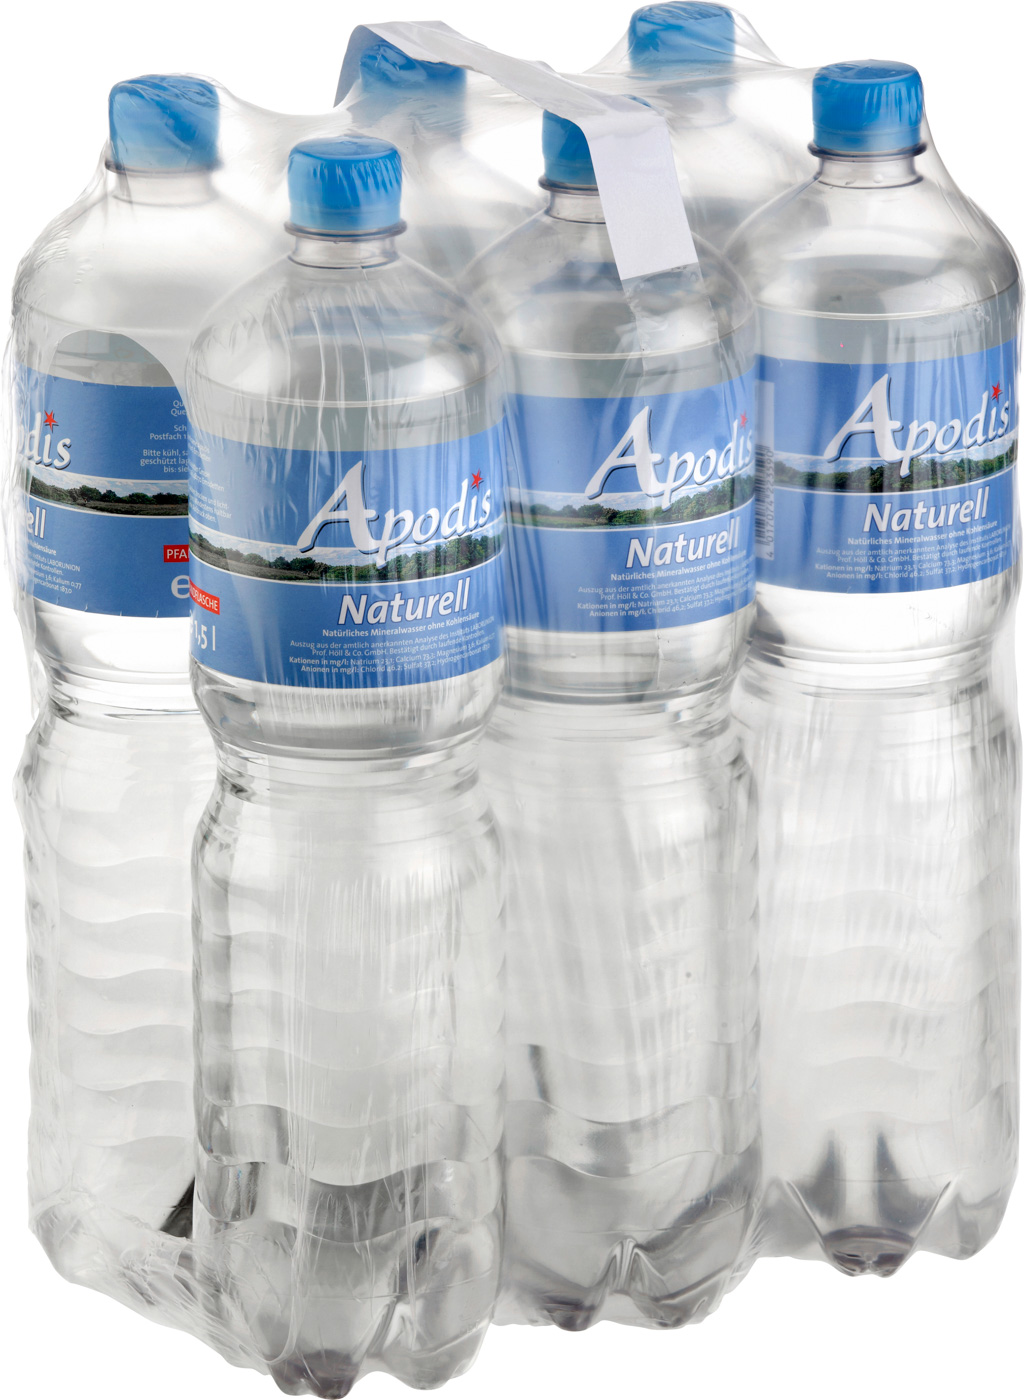 Apodis Mineralwasser Naturell 1,5L Flasche Mehrwegartikel (inkl. Pfand)